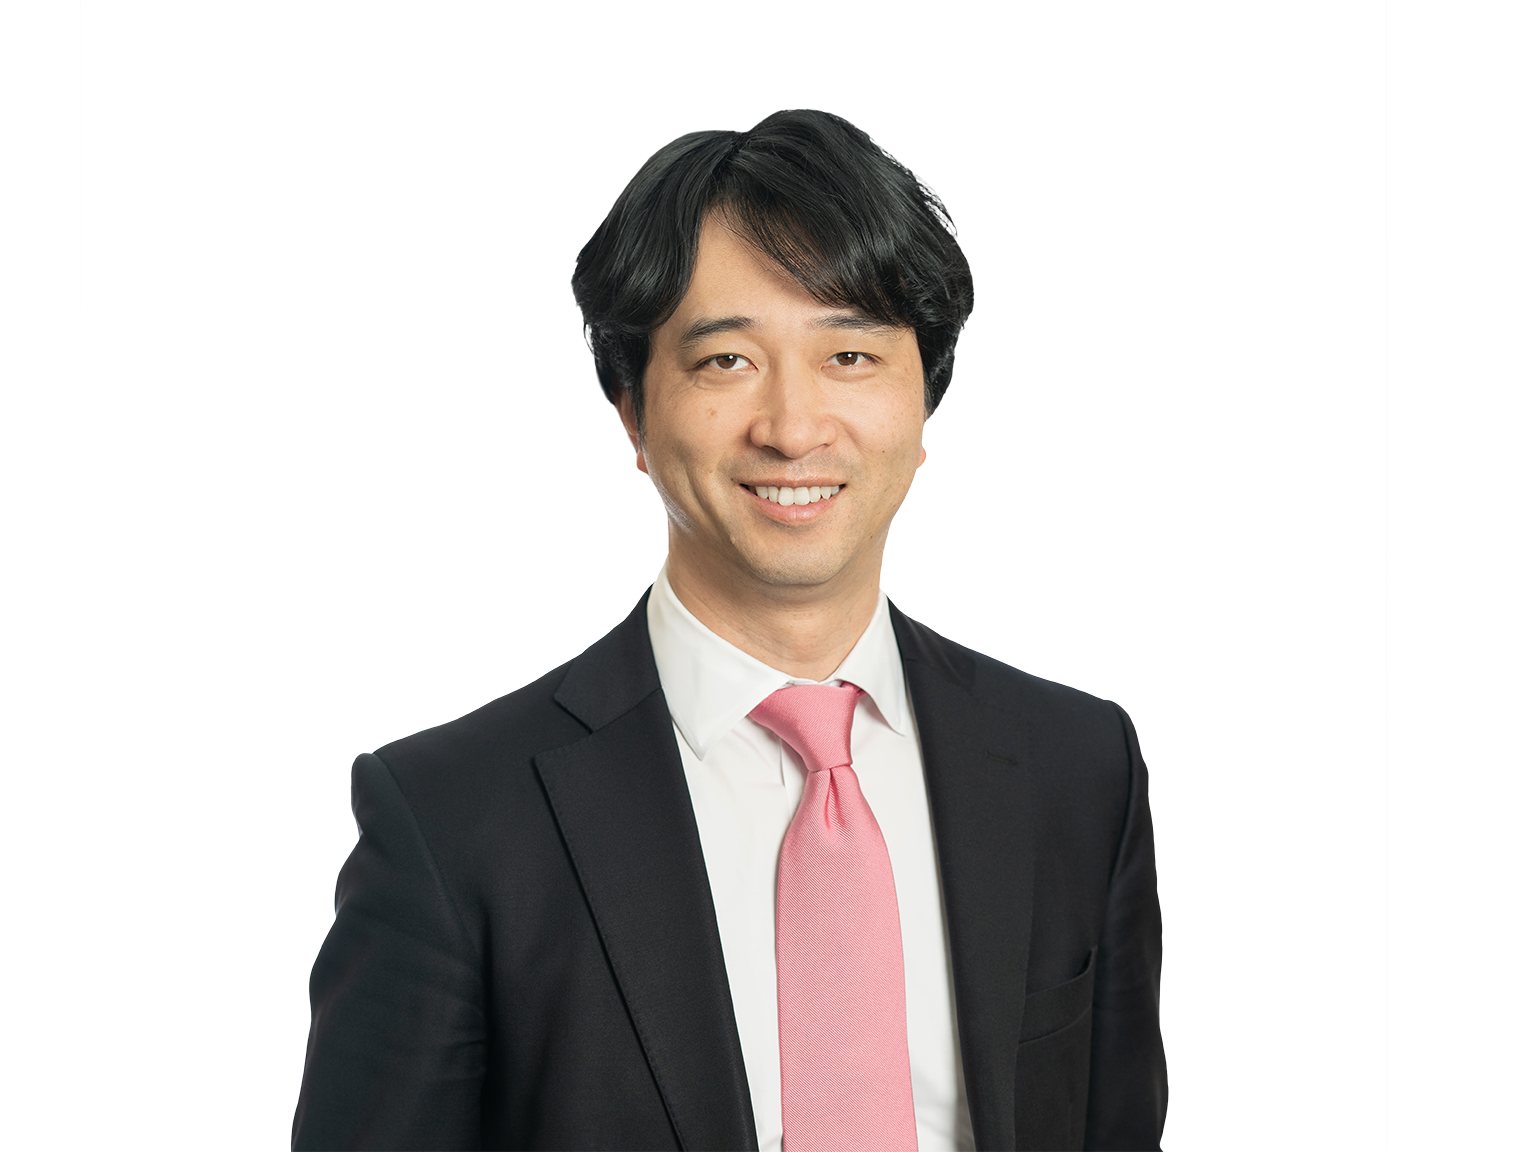 リーダーシップ紹介 | 日本 | McKinsey u0026 Company